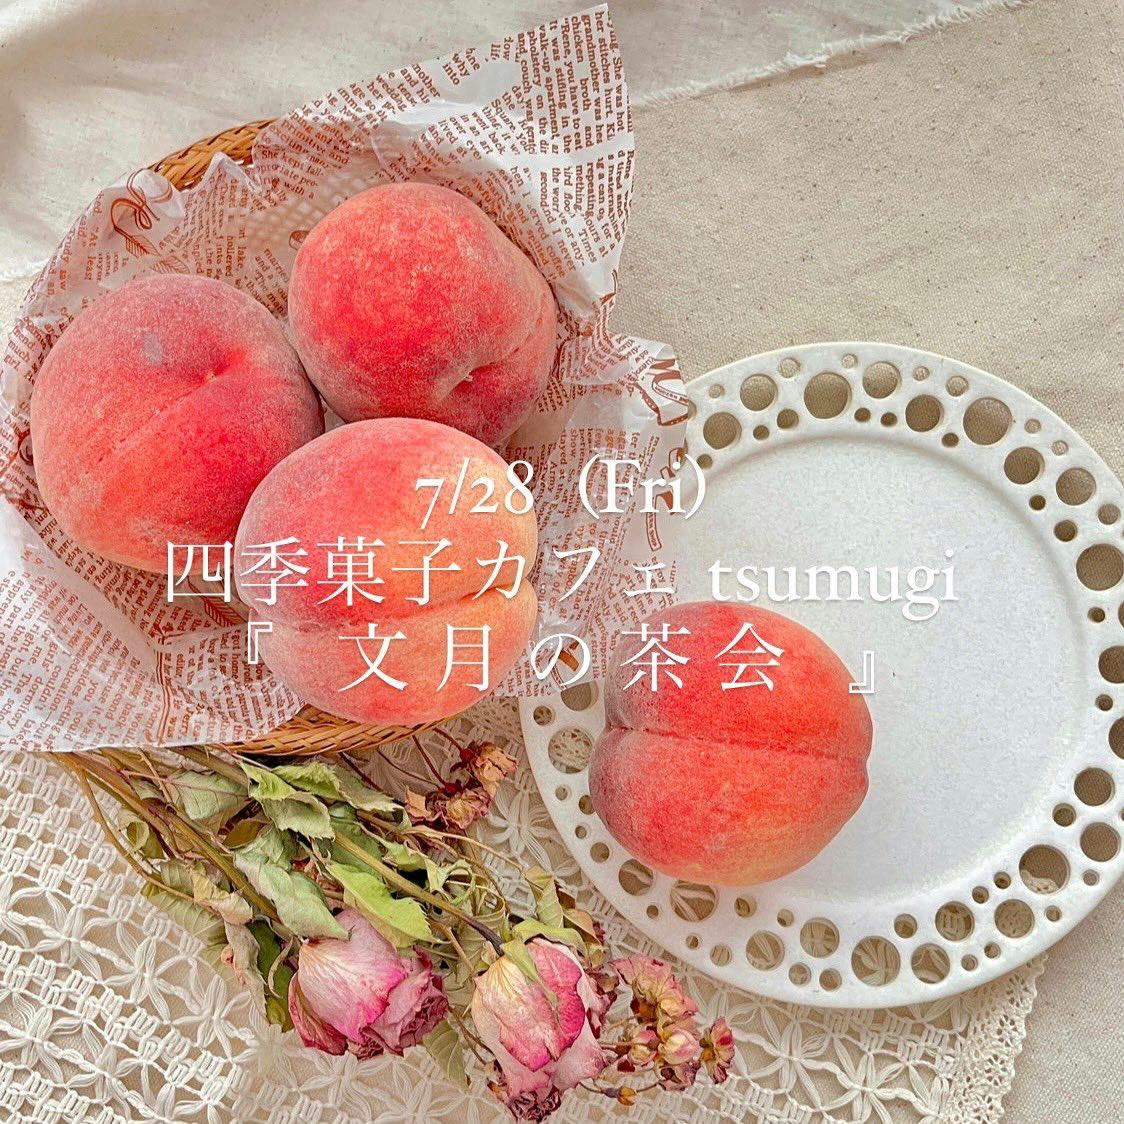 7月28日、四季菓子カフェtsumugi「文月の茶会」〜桃花褐の愛逢い月〜